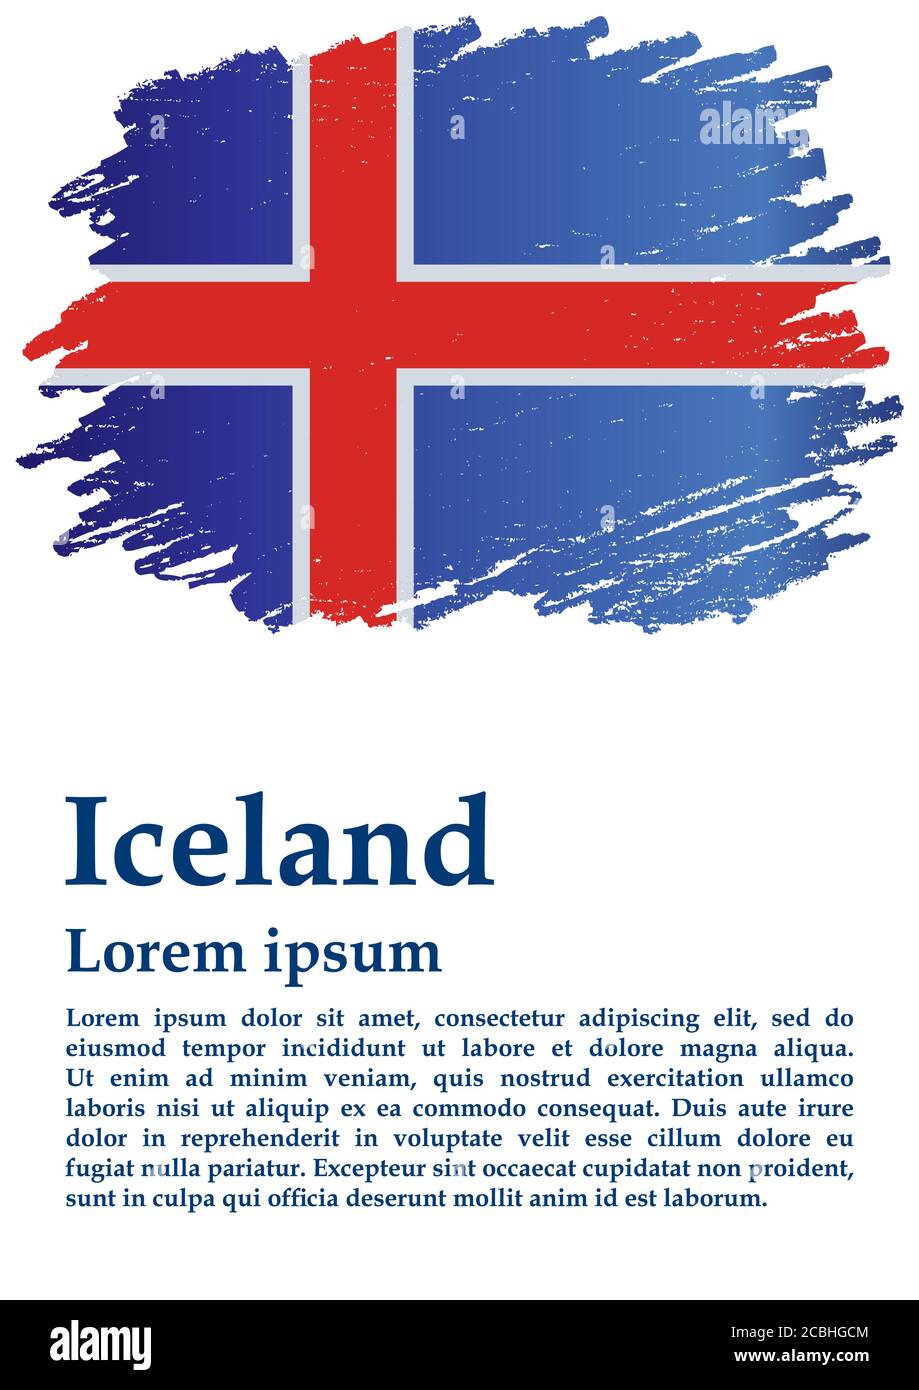 Bandiera dell'Islanda, Islanda. Modello per il design del premio, un documento ufficiale con la bandiera dell'Islanda. Illustrazione vettoriale luminosa e colorata. Illustrazione Vettoriale